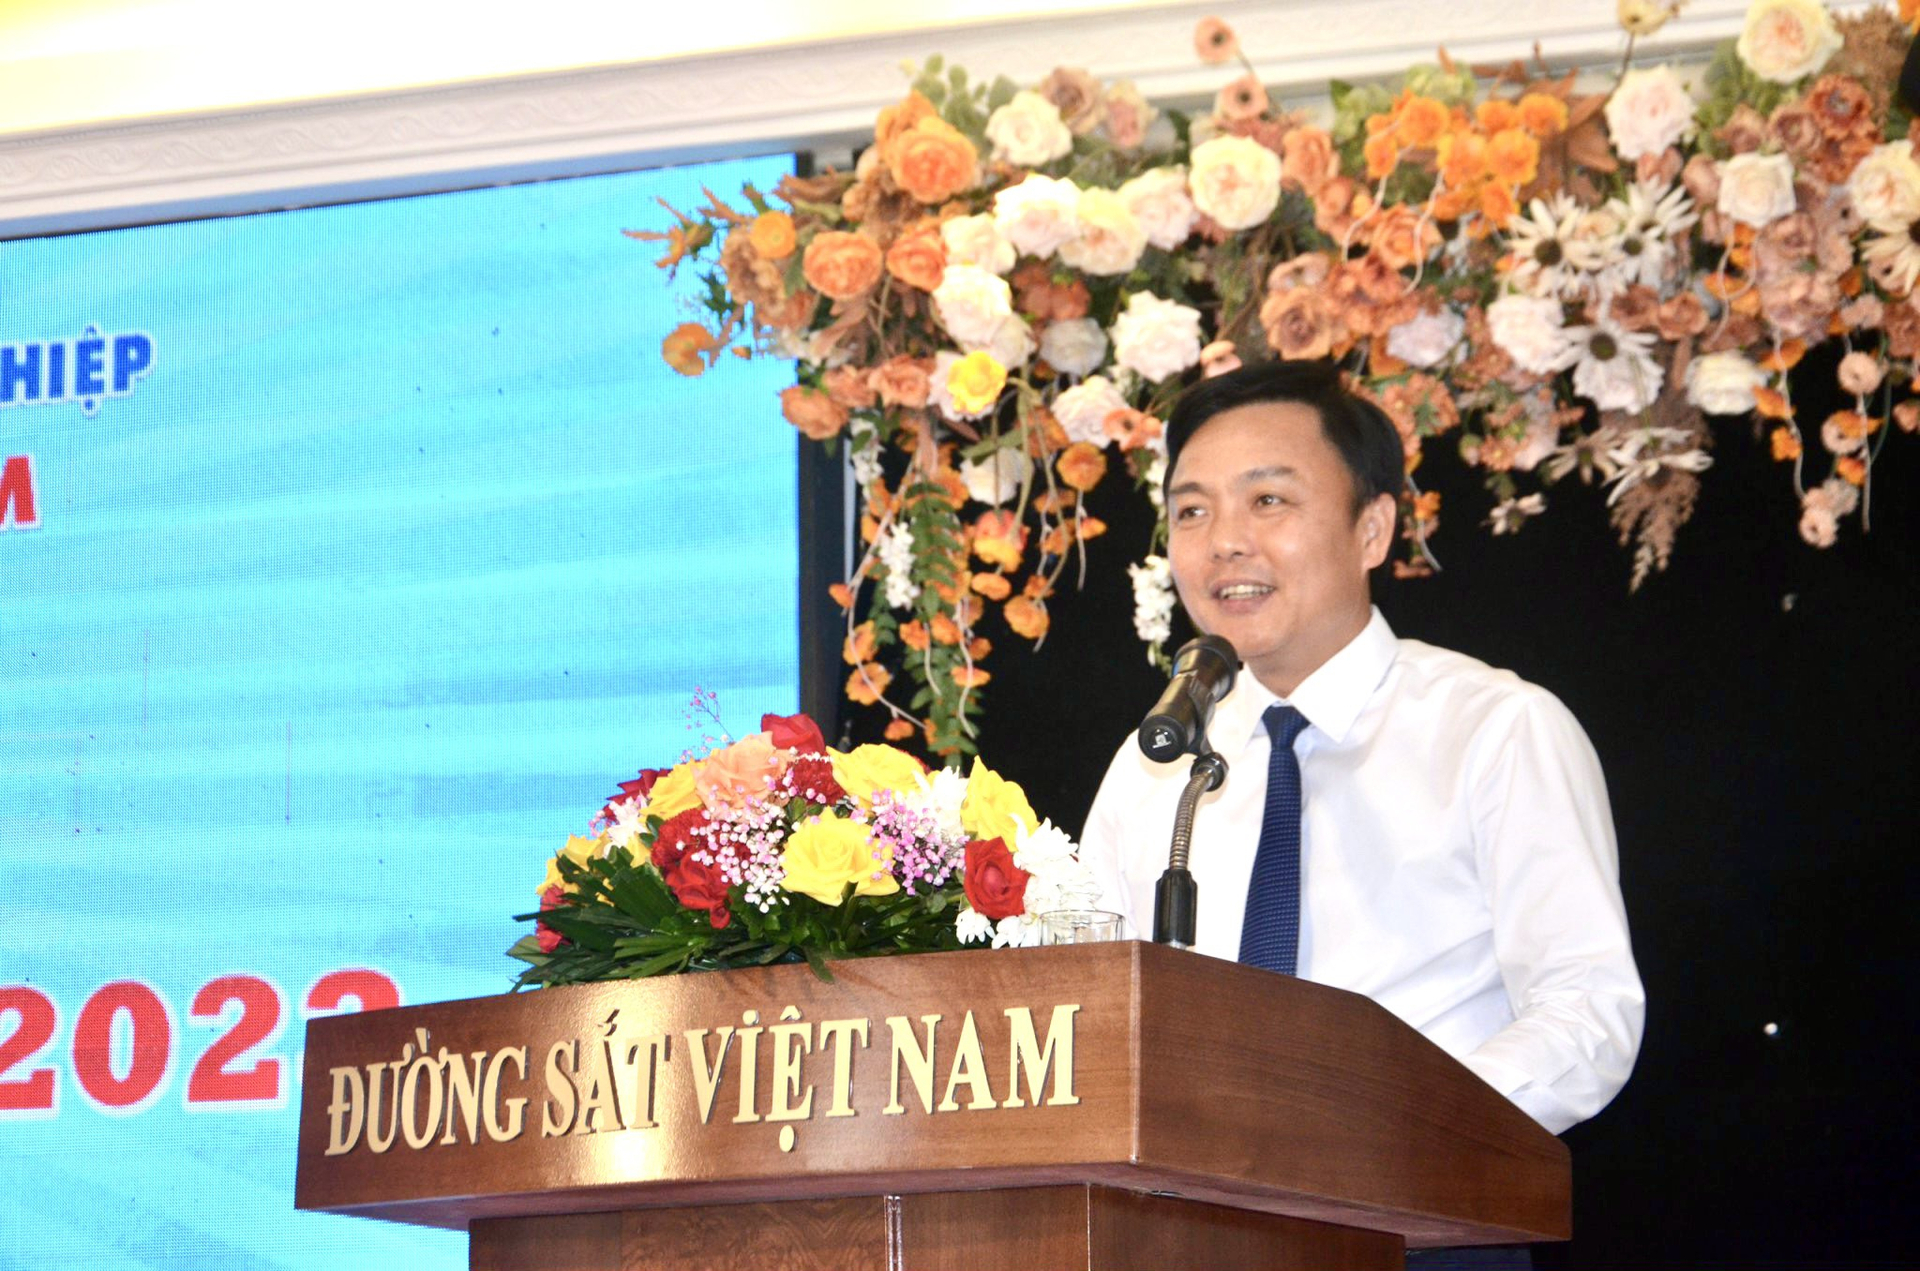 Ông Hoàng Gia Khánh giữ chức vụ Tổng giám đốc Tổng công ty Đường sắt Việt Nam.